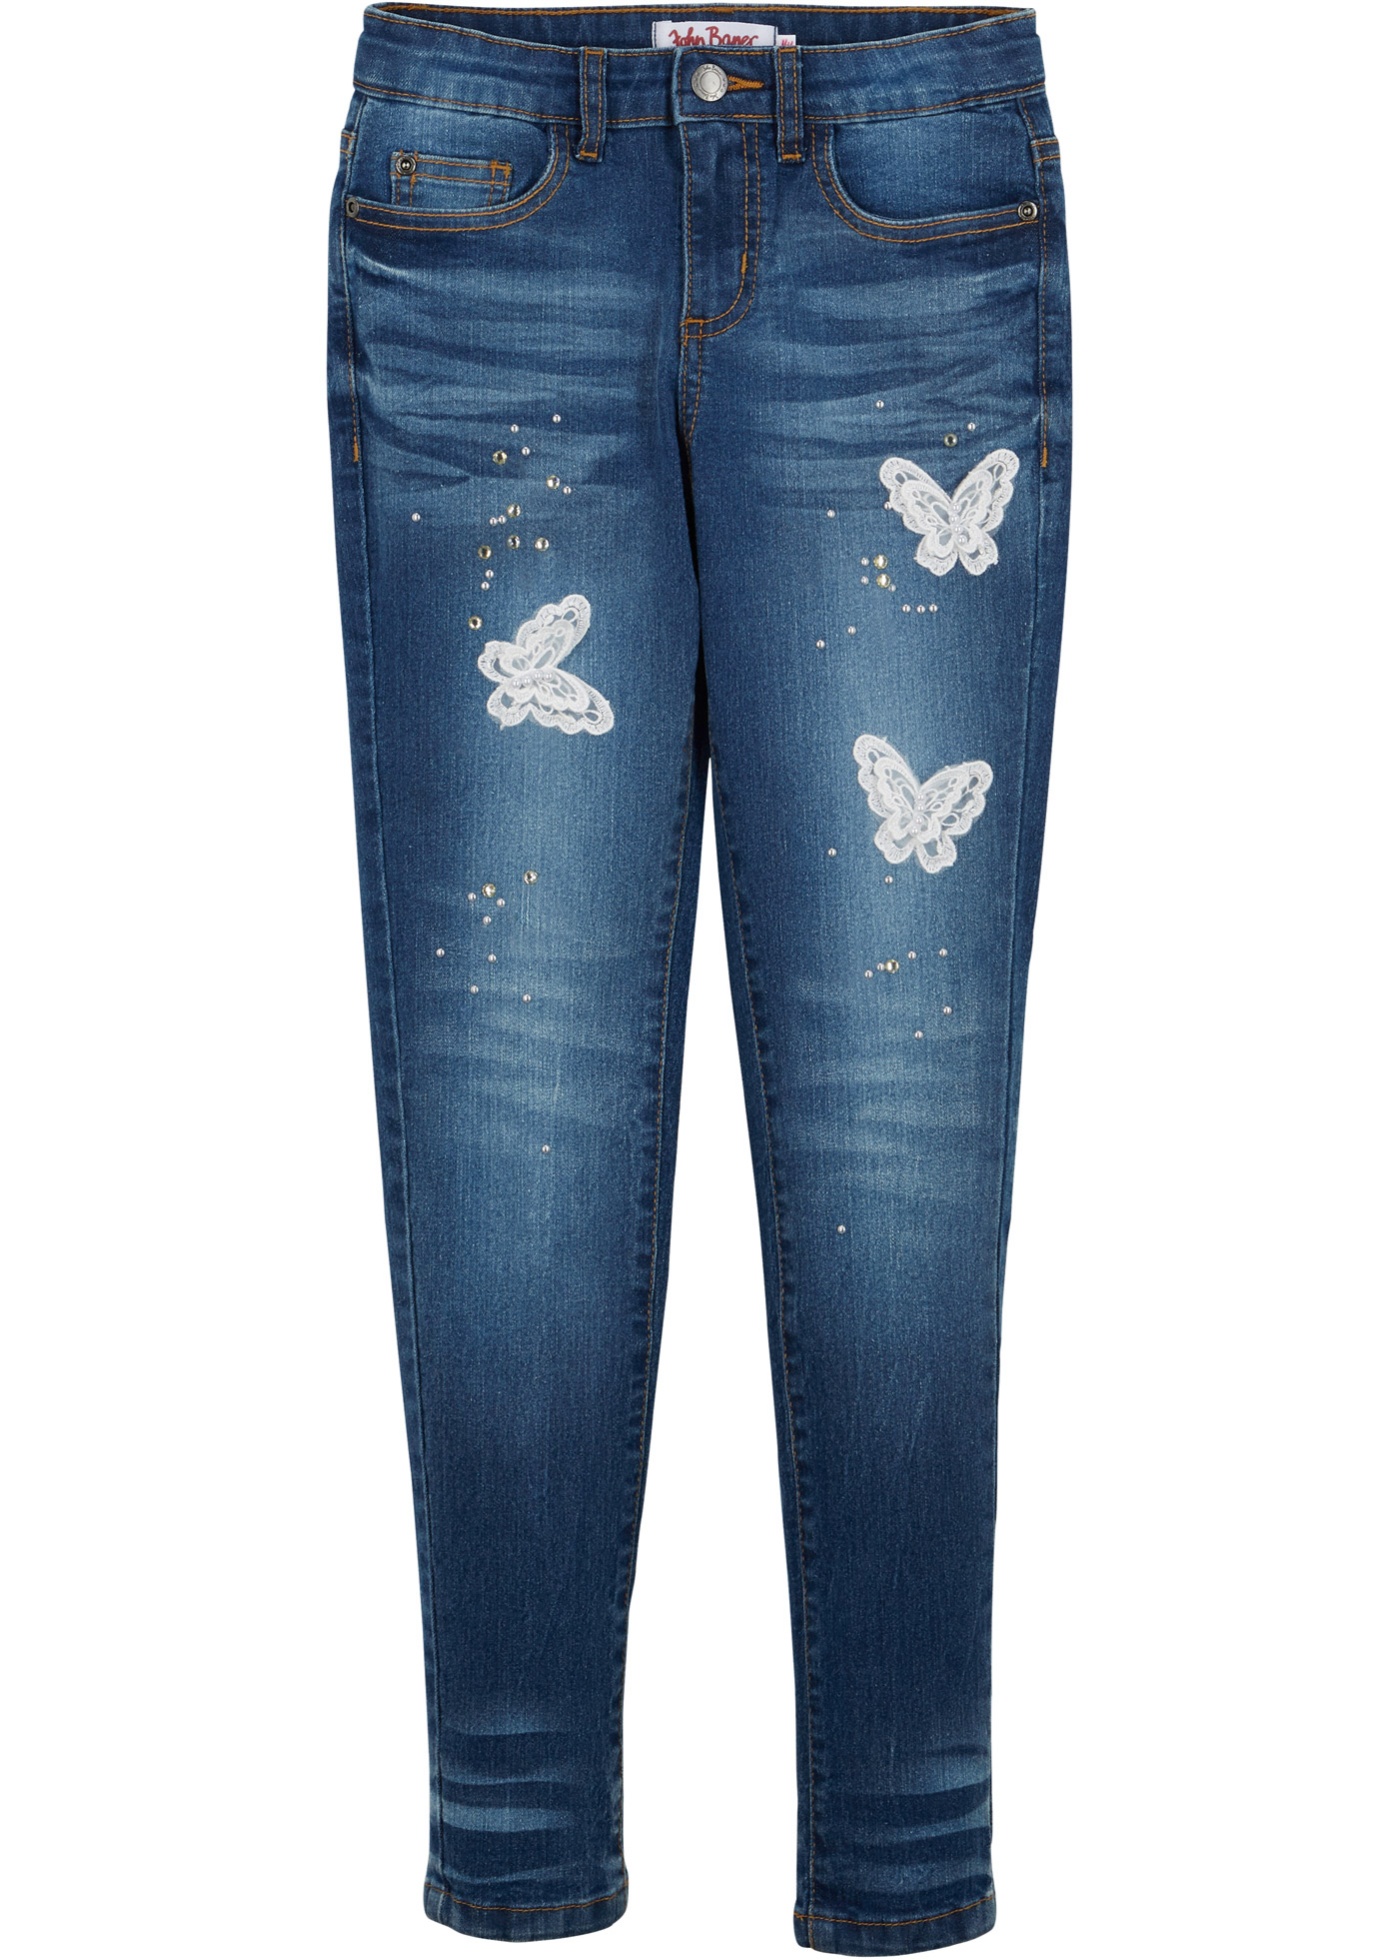 Meisjes jeans met vlinders